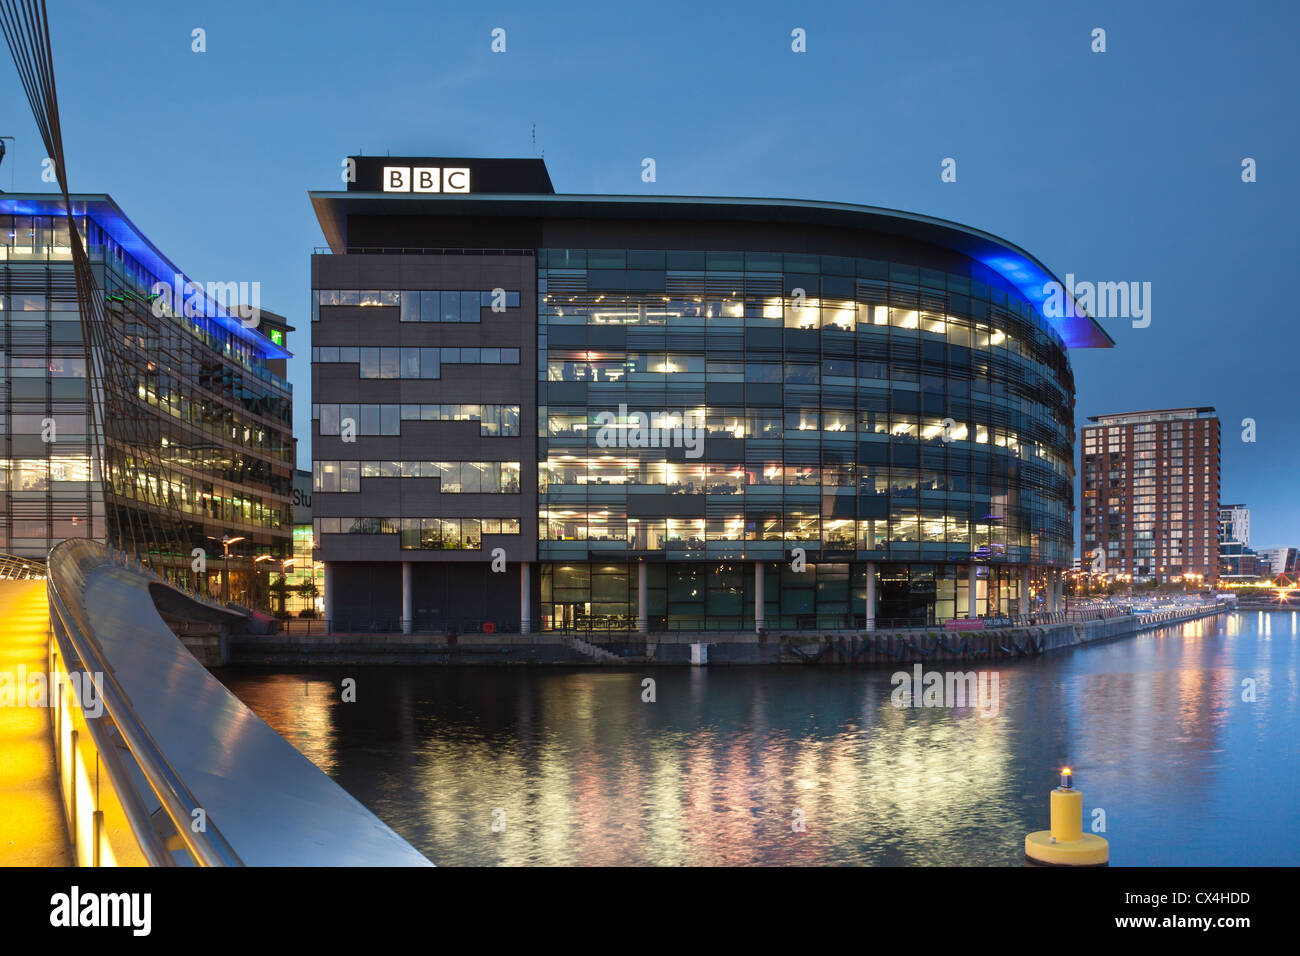 Media City sur Manchester Salford Quays de la BBC Banque D'Images